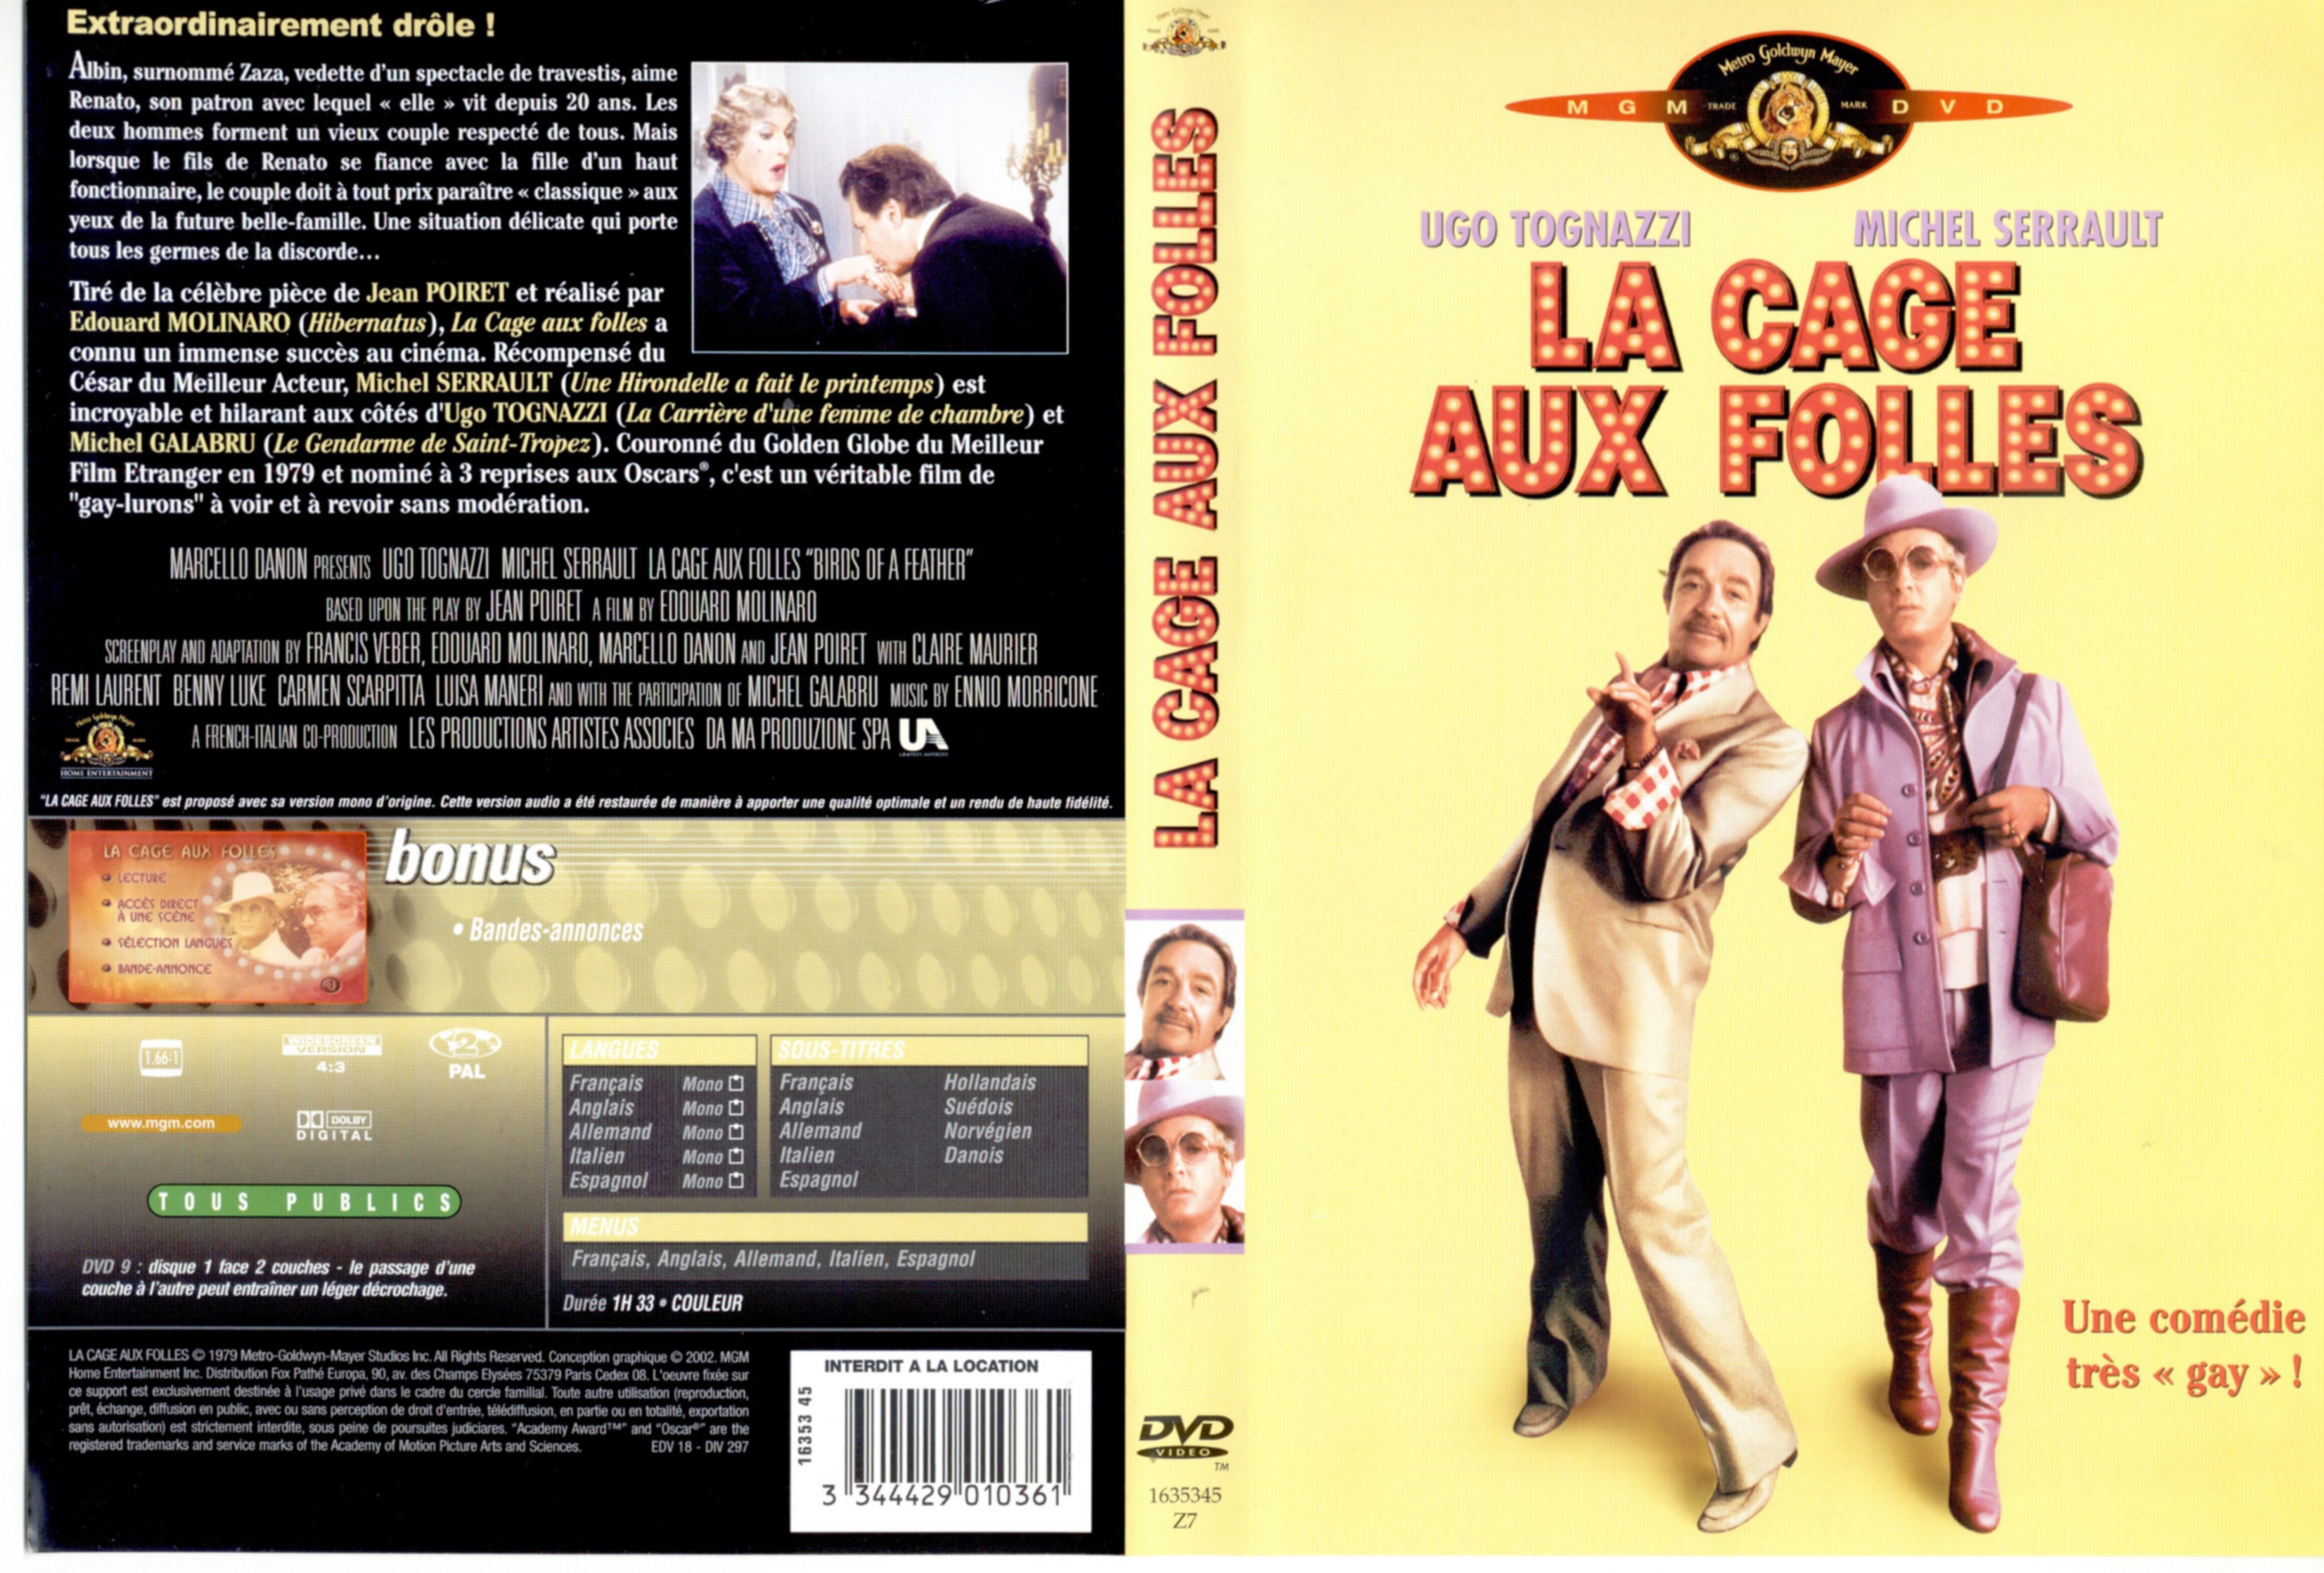 Jaquette DVD La cage aux folles v2